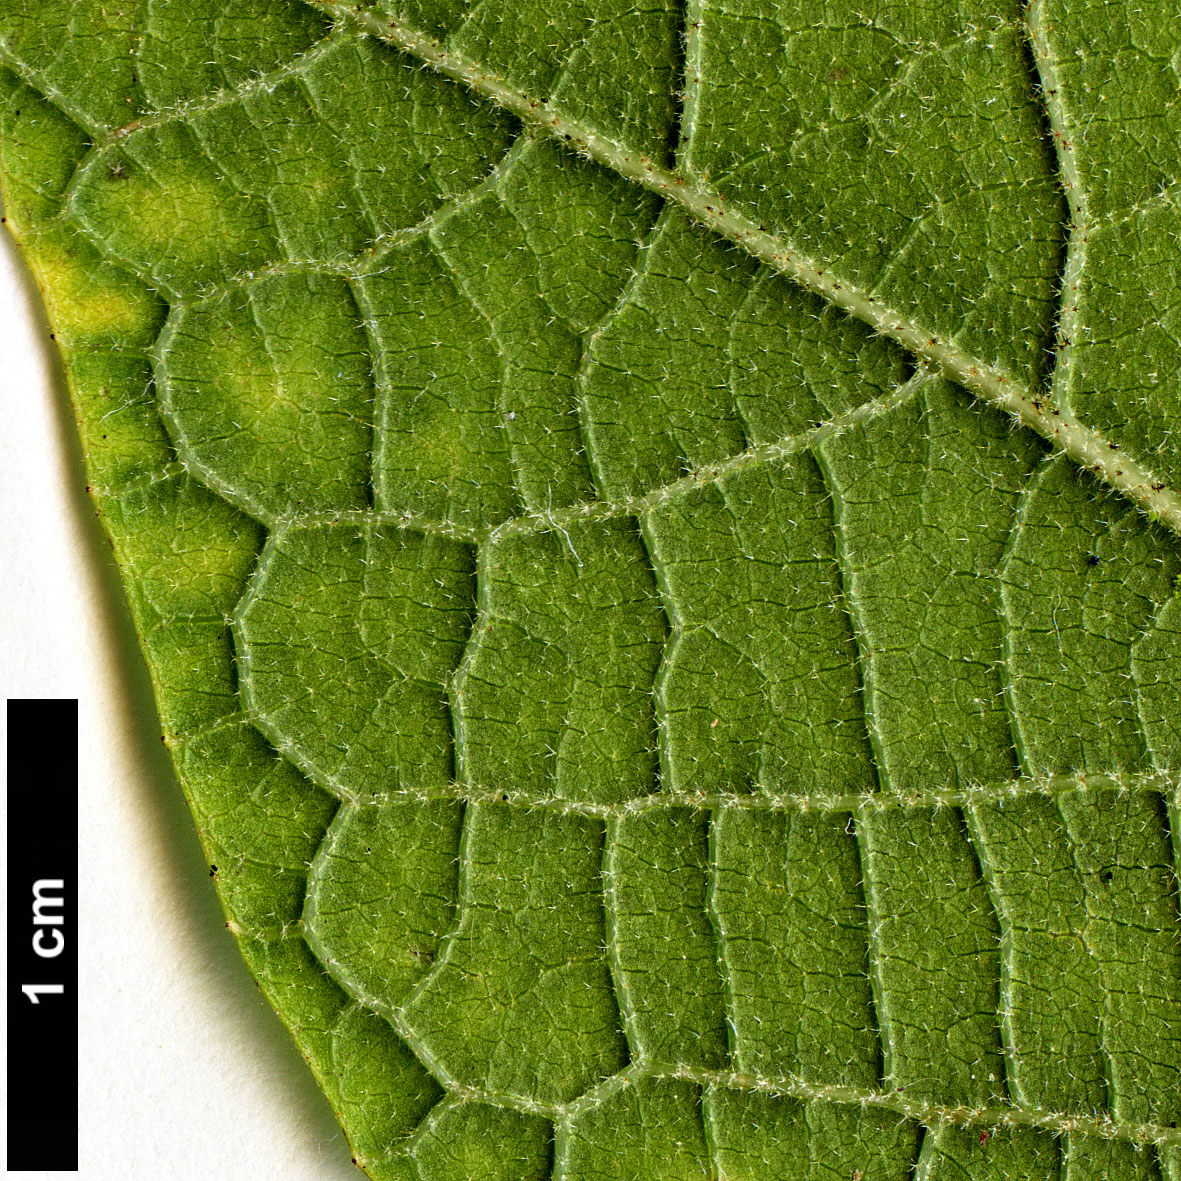 High resolution image: Family: Styracaceae - Genus: Styrax - Taxon: hemsleyanus